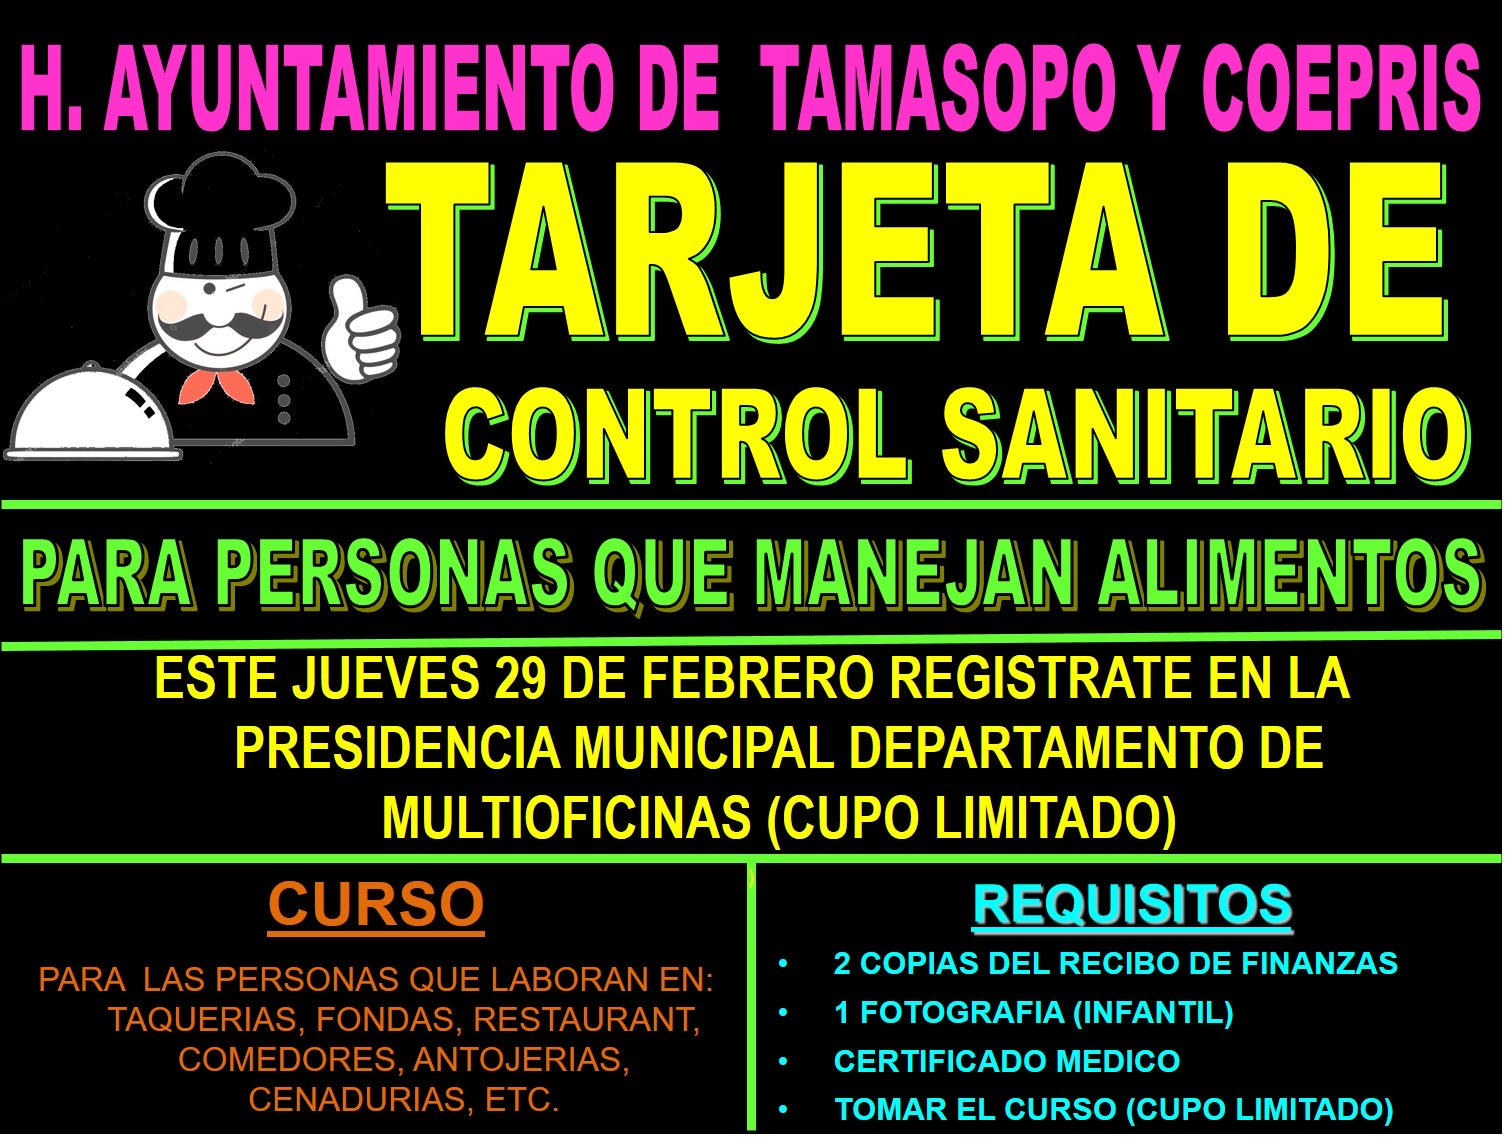 COMERCIANTES CON VENTA DE COMIDA DEBERÁN TENER TARJETA DE CONTROL SANITARIO